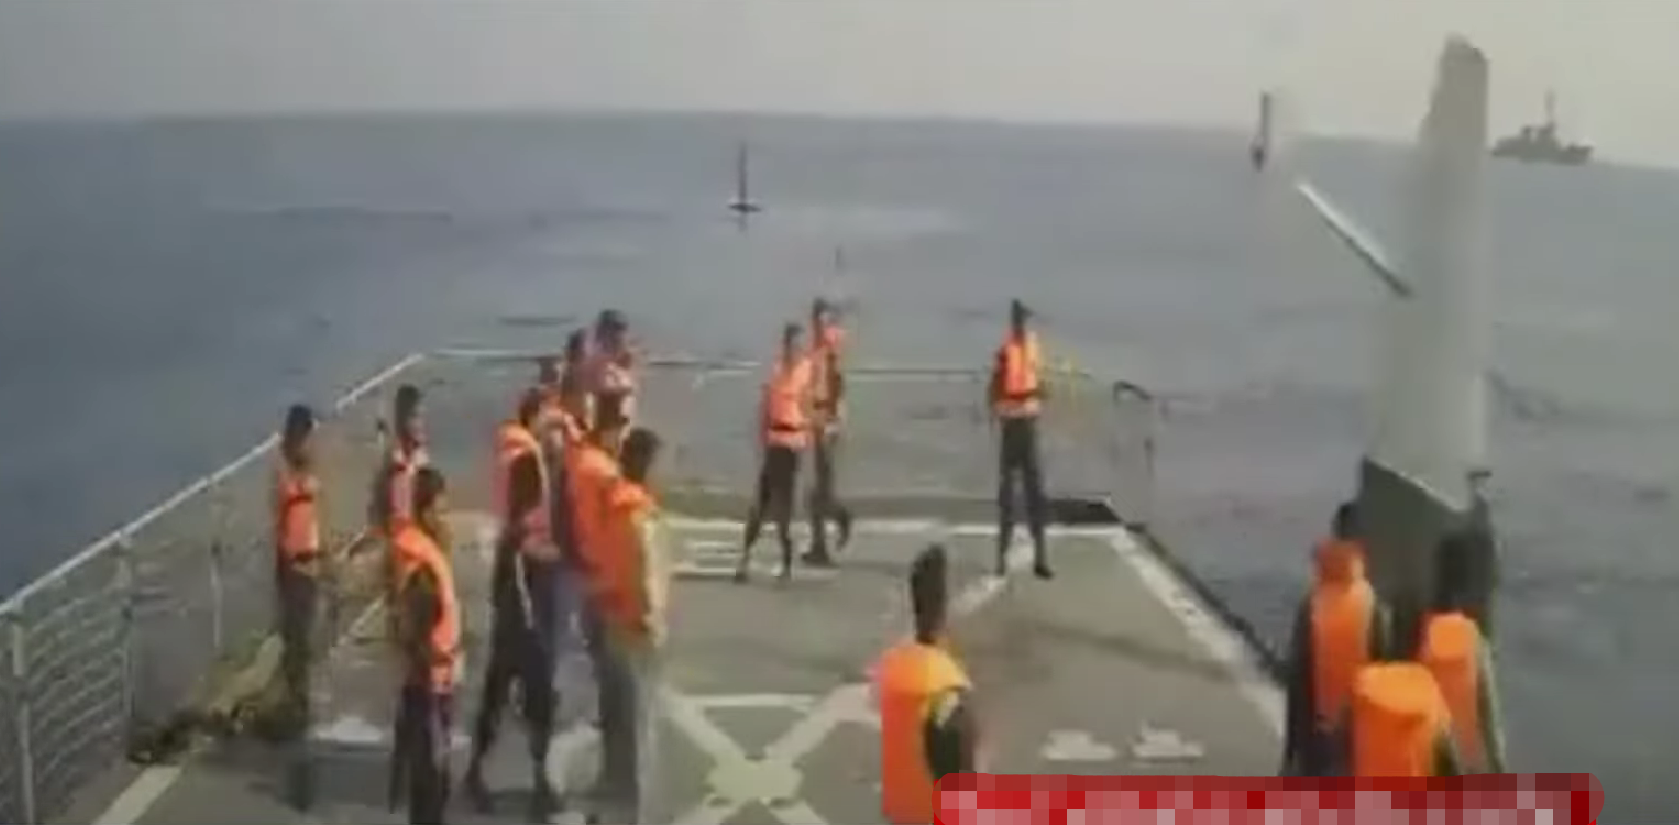 伊朗人员将捕获的美军无人艇推下甲板（伊朗国家电视台）